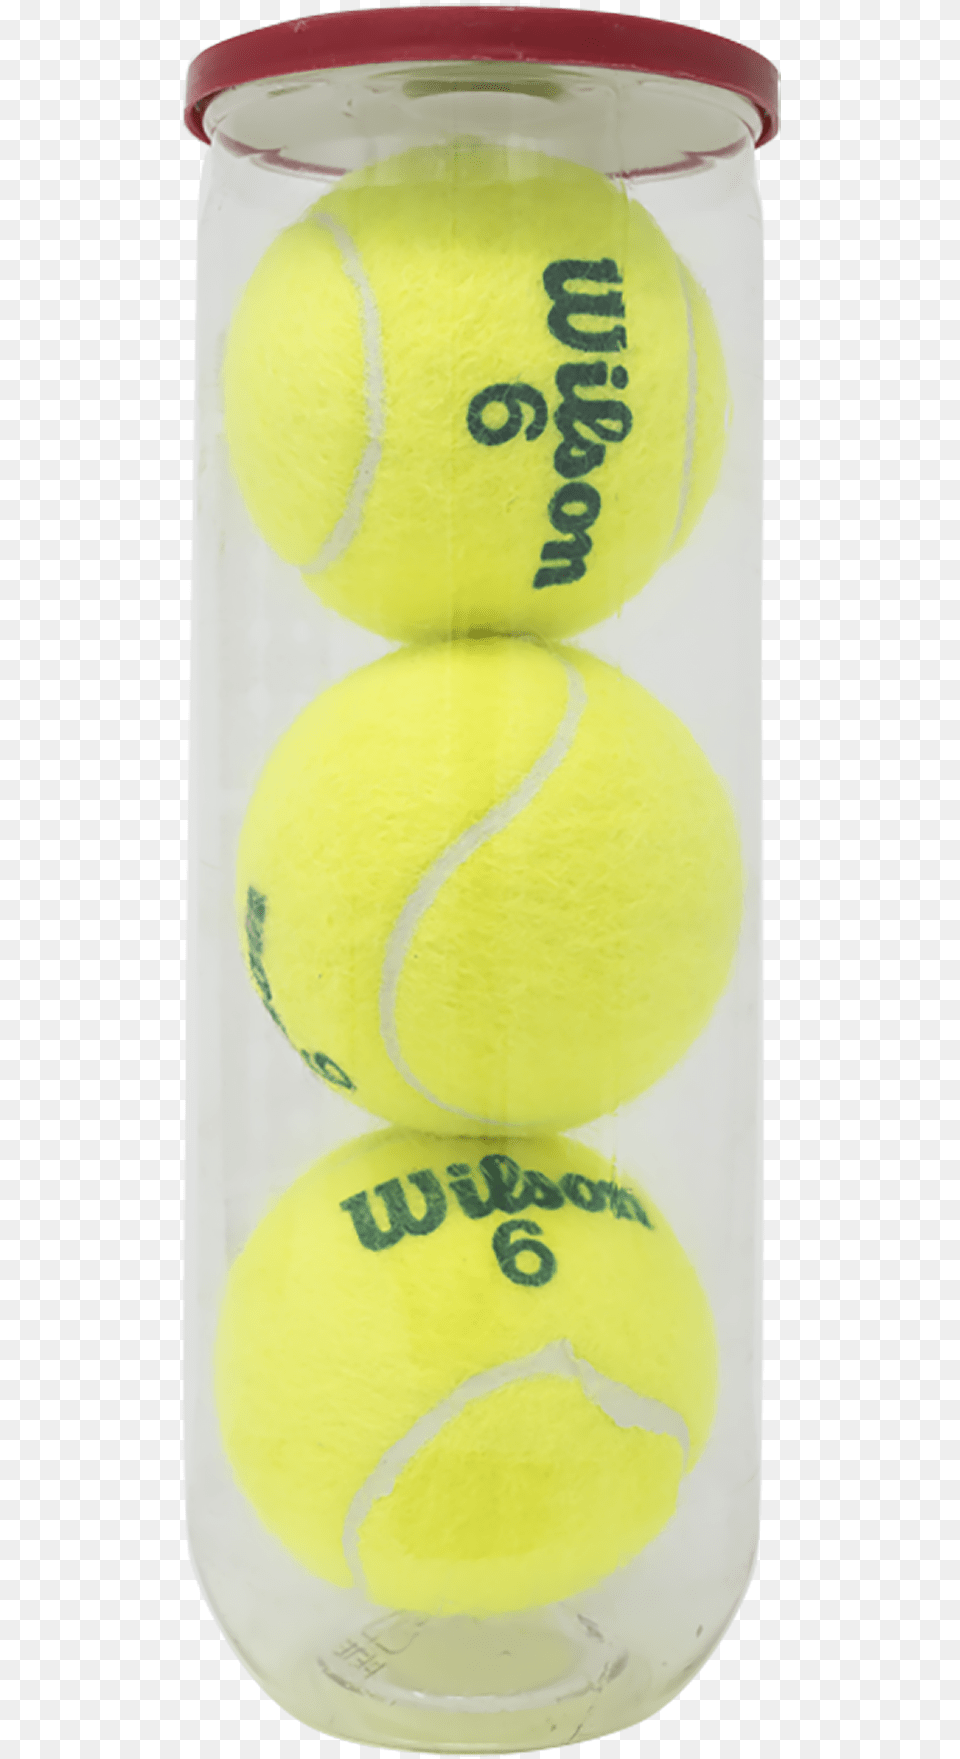 Soft Tennis, Ball, Sport, Tennis Ball Png Image